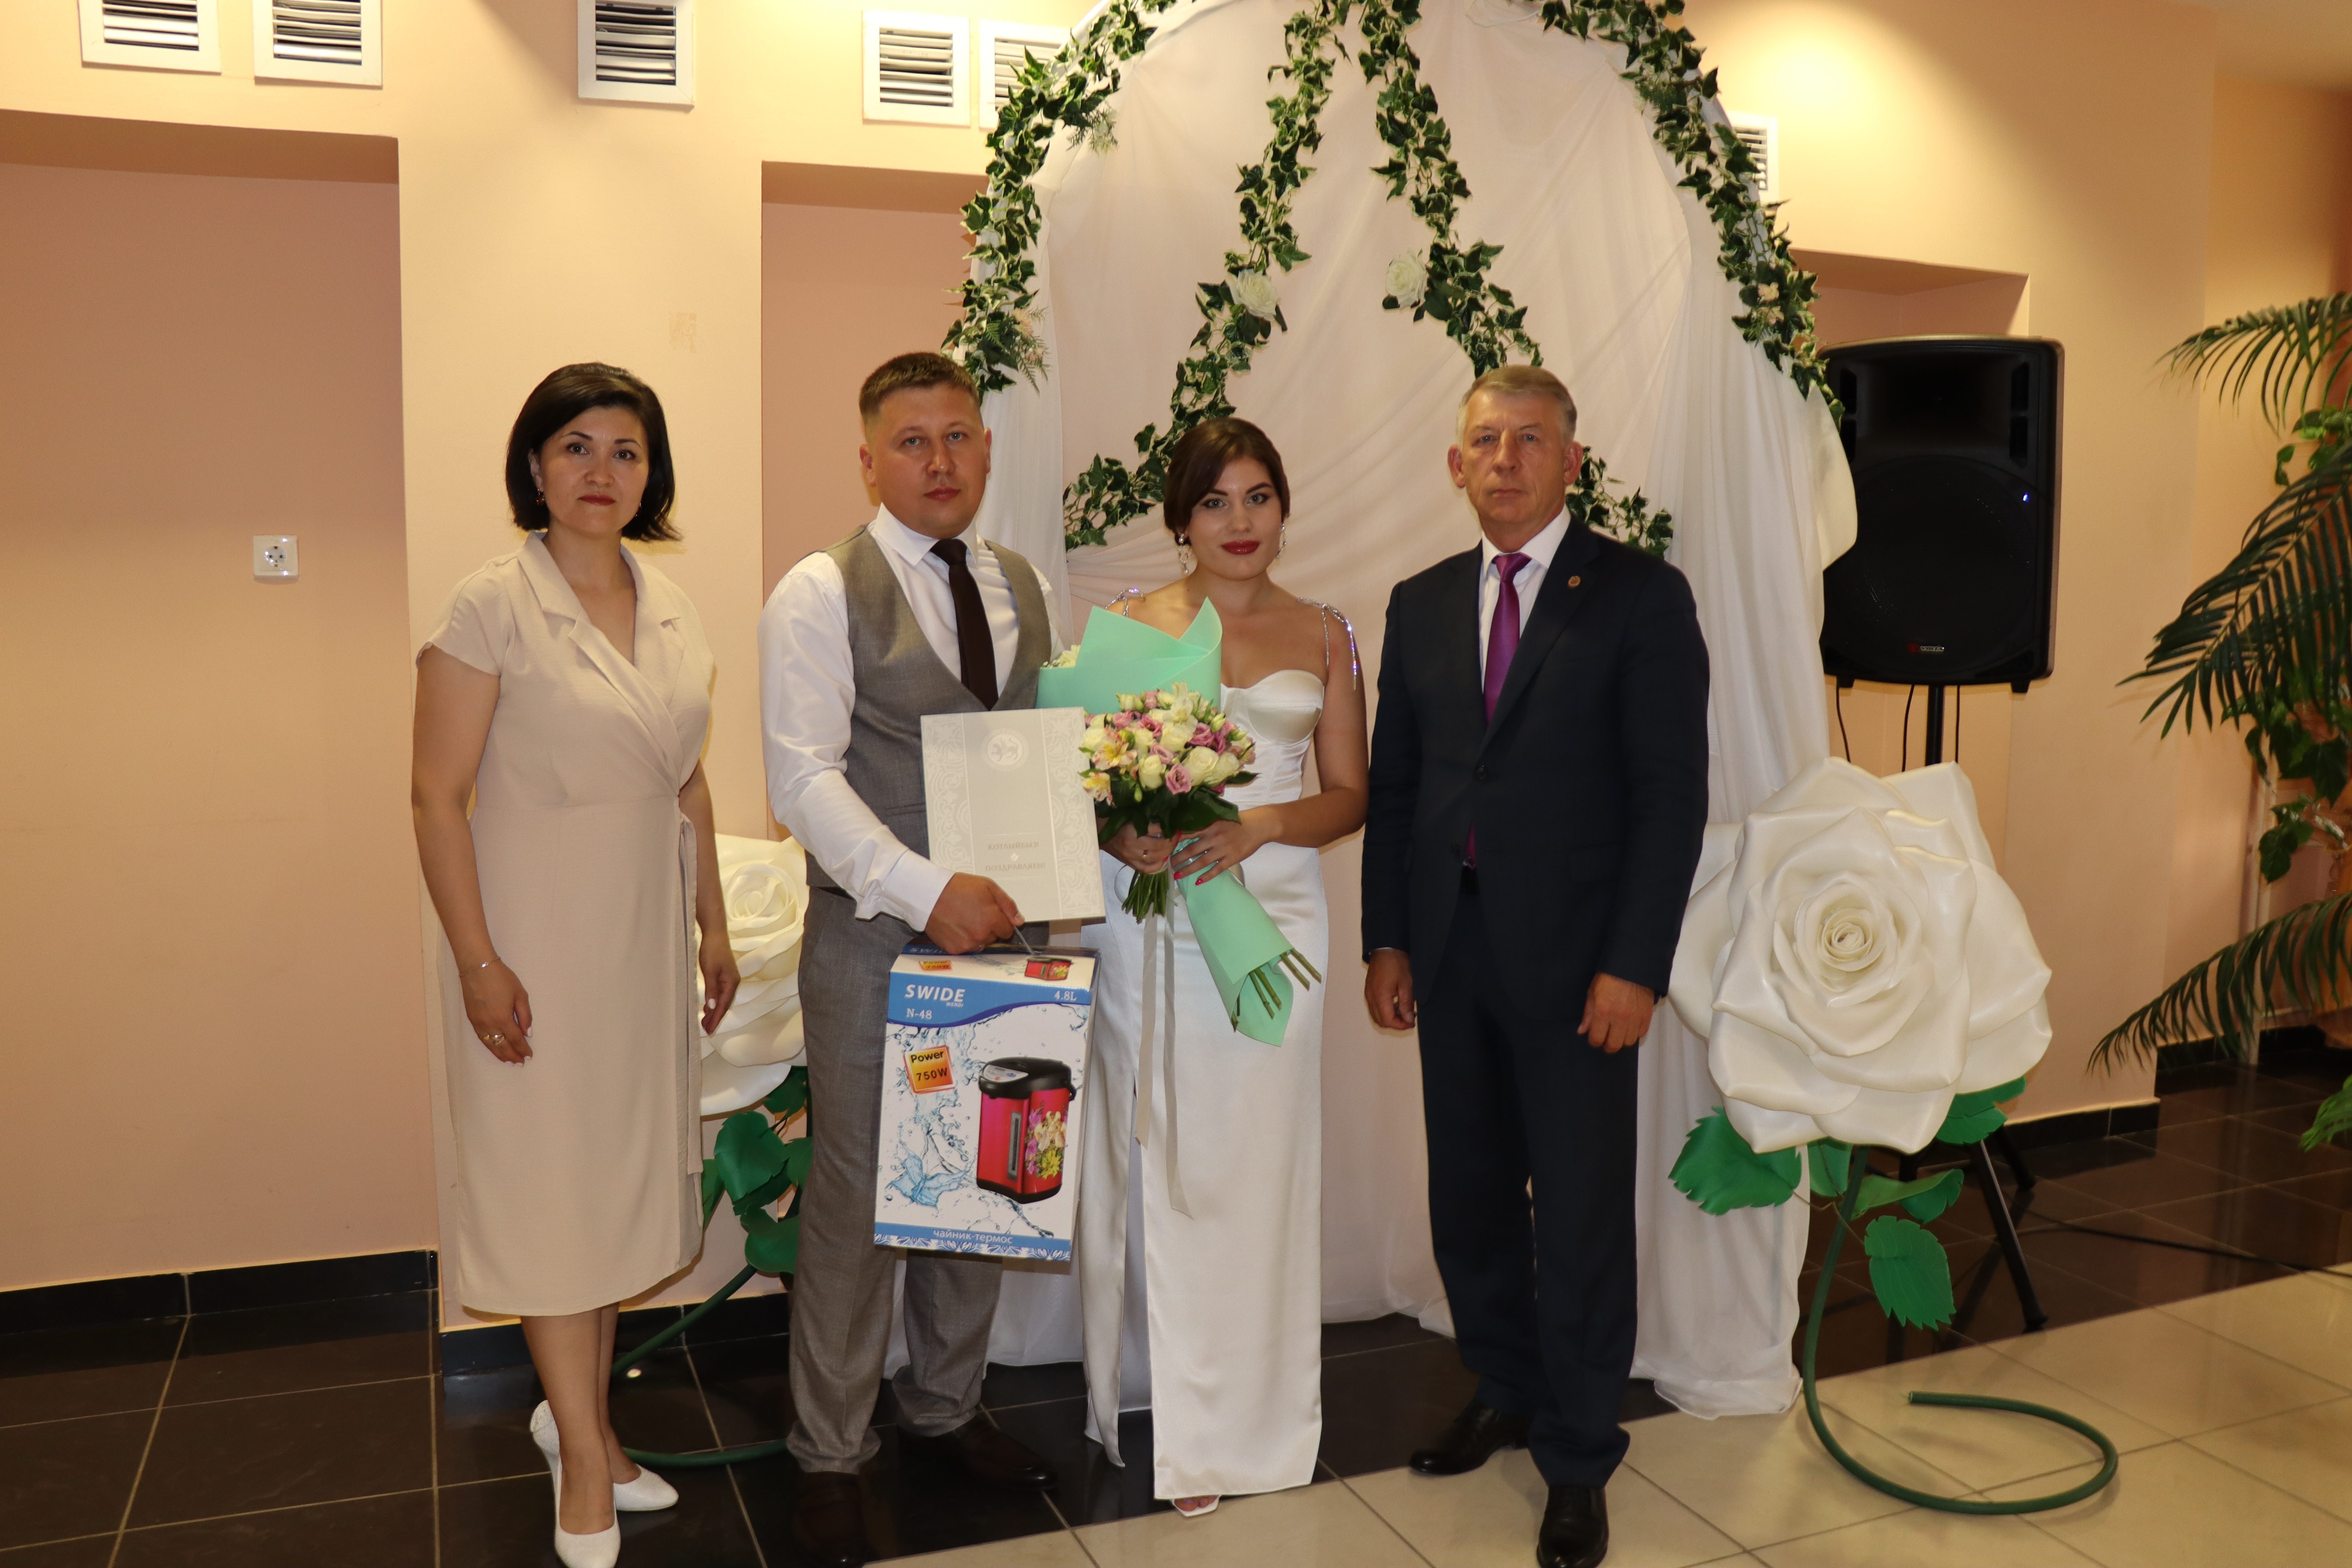 Регистрация брака в день се6мьи, любви и верности. Фото Раниля Алиуллова